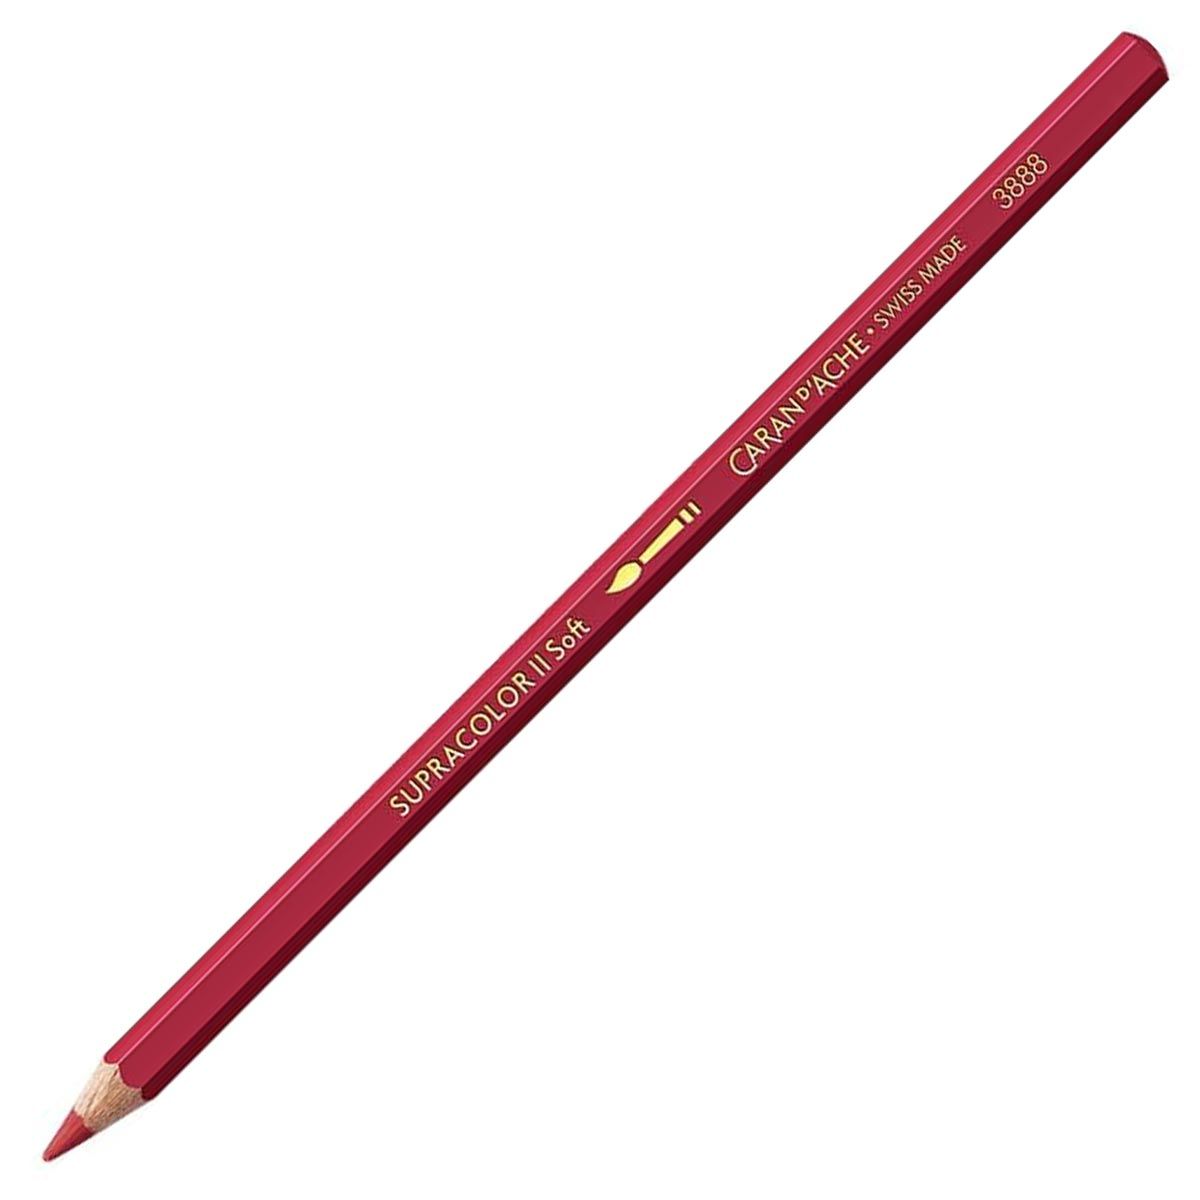 Caran d'Ache Supracolor ll Soft Aquarelle Pencil - Indian Red 075